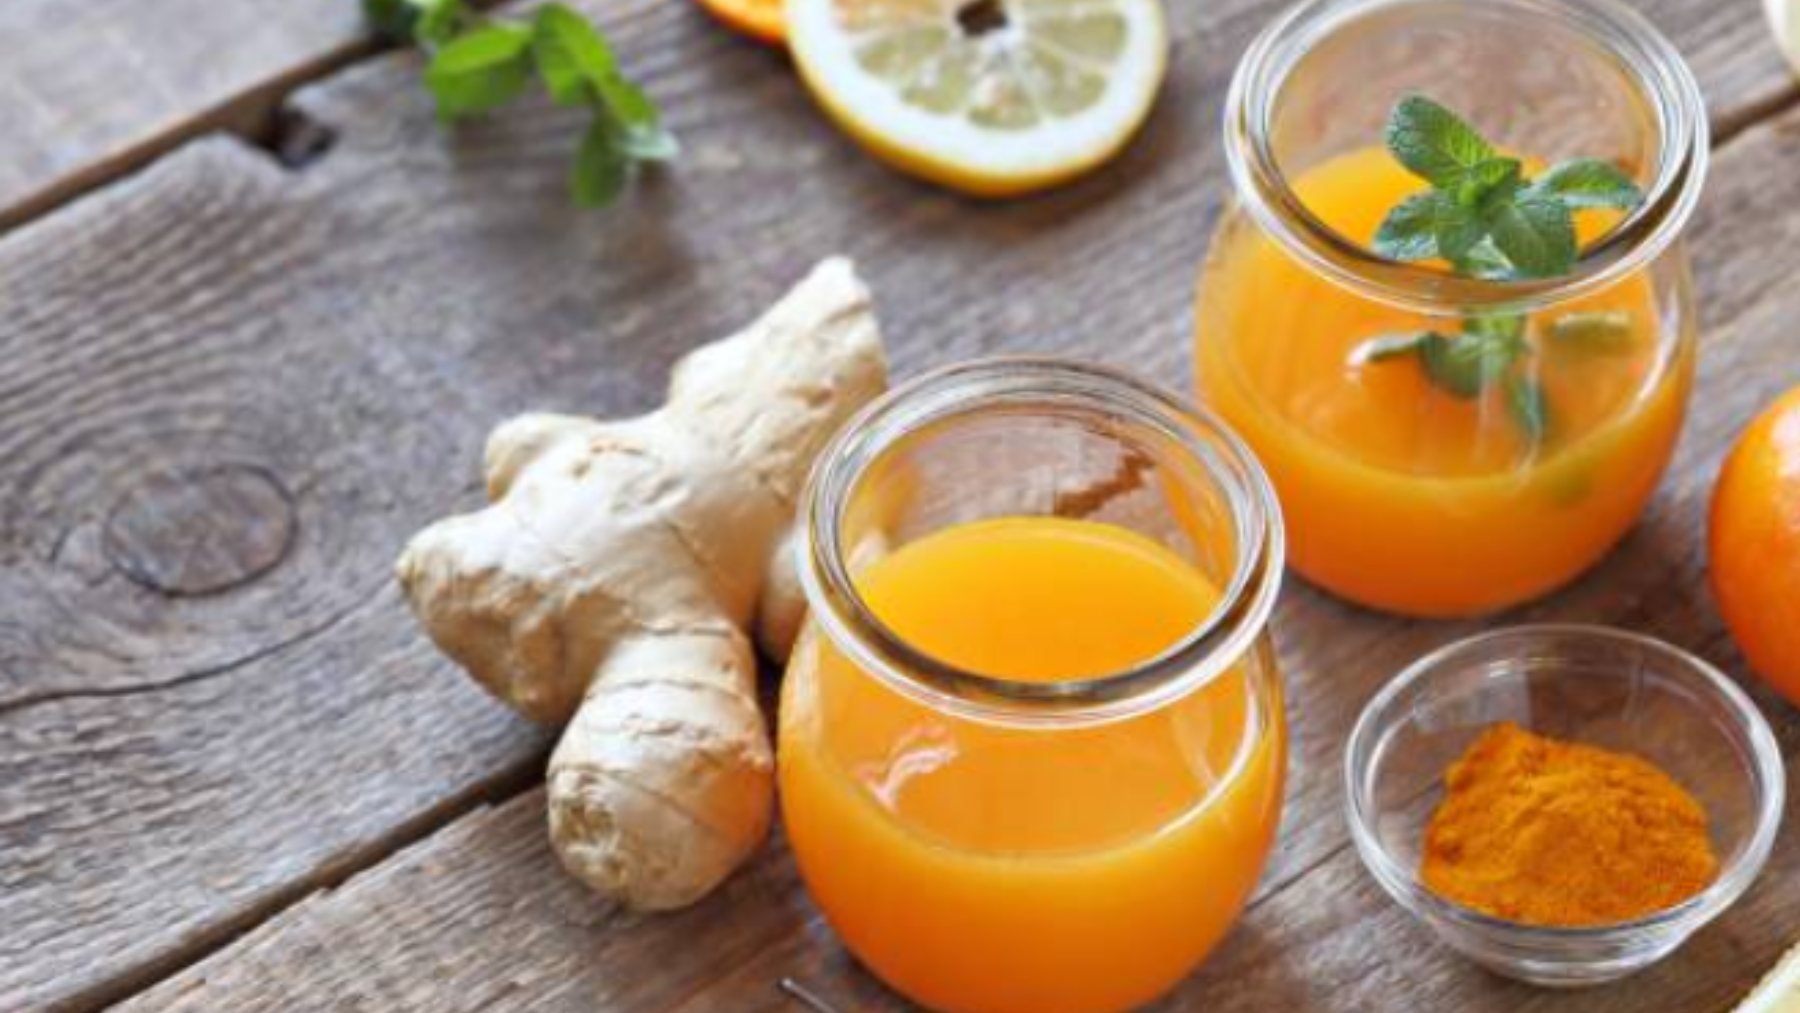 La receta viral de chupitos de naranja y jengibre para librarte de los resfriados